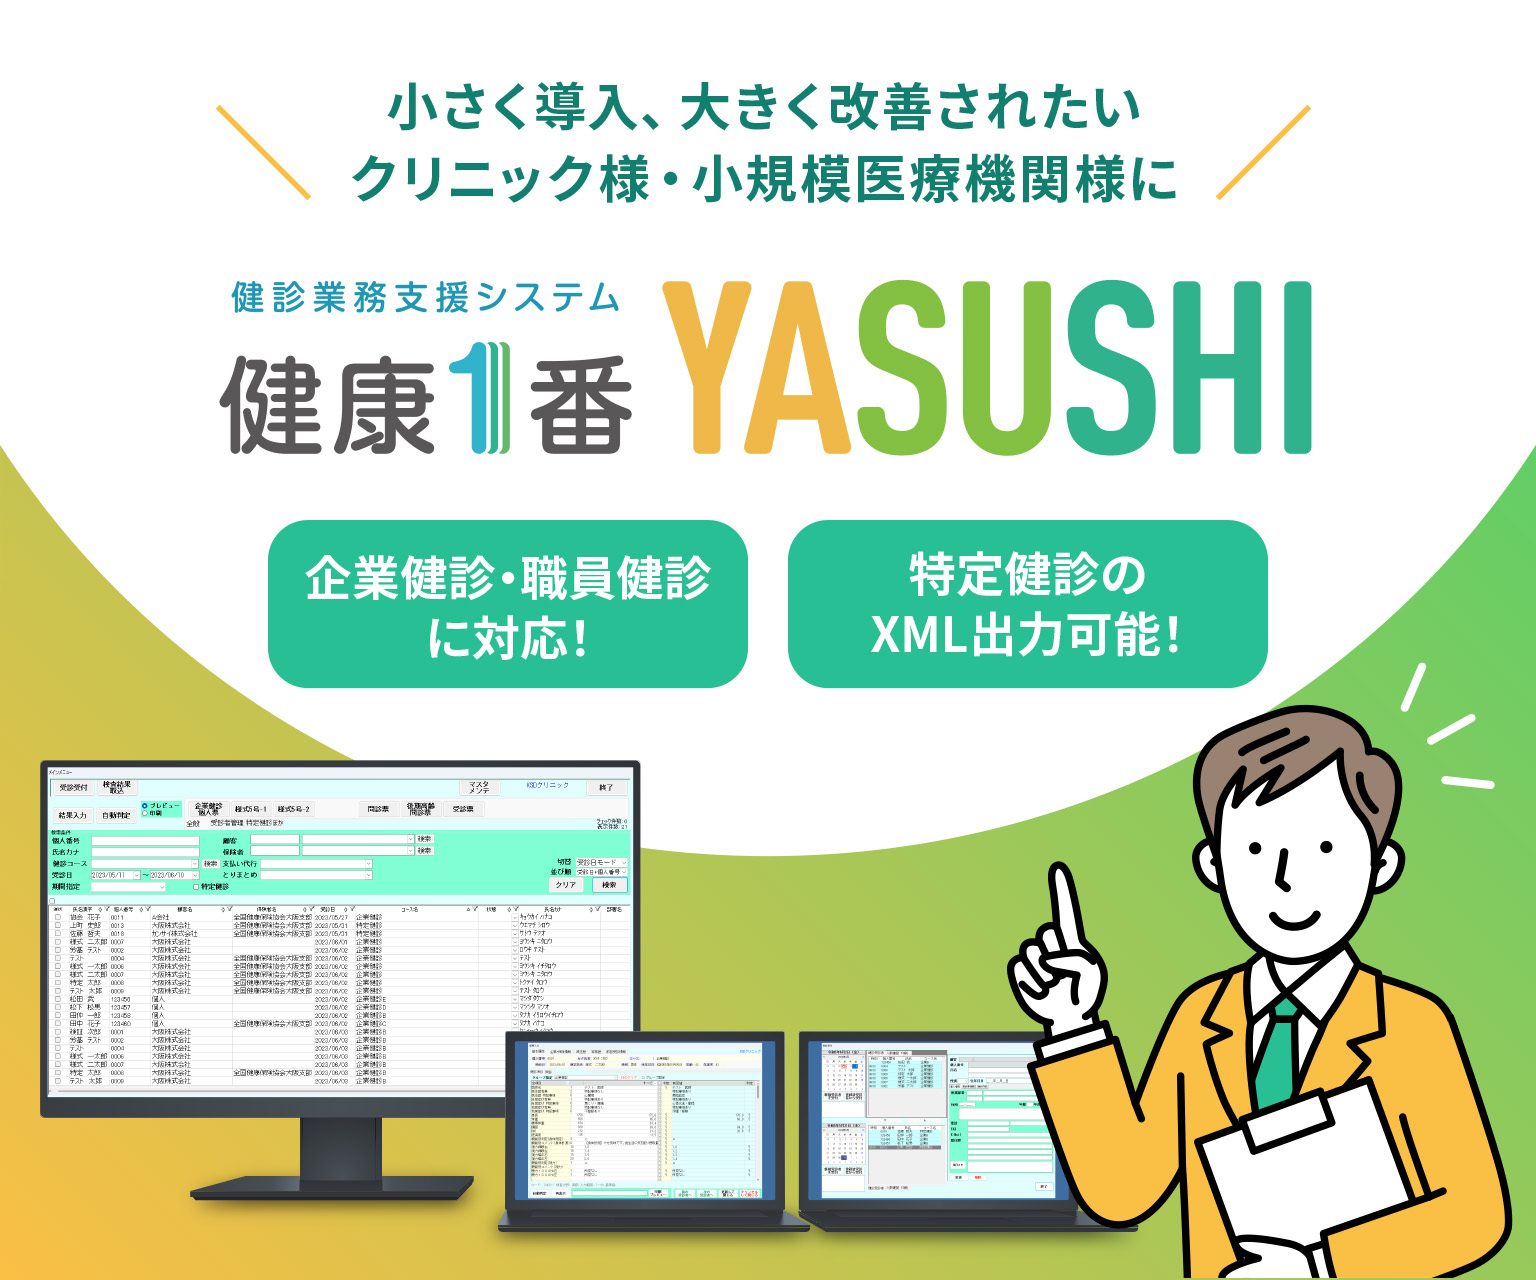 健診業務支援システム 健康1番 YASUSHI | 小さく導入、大きく改善されたいクリニック様・小規模医療機関様に